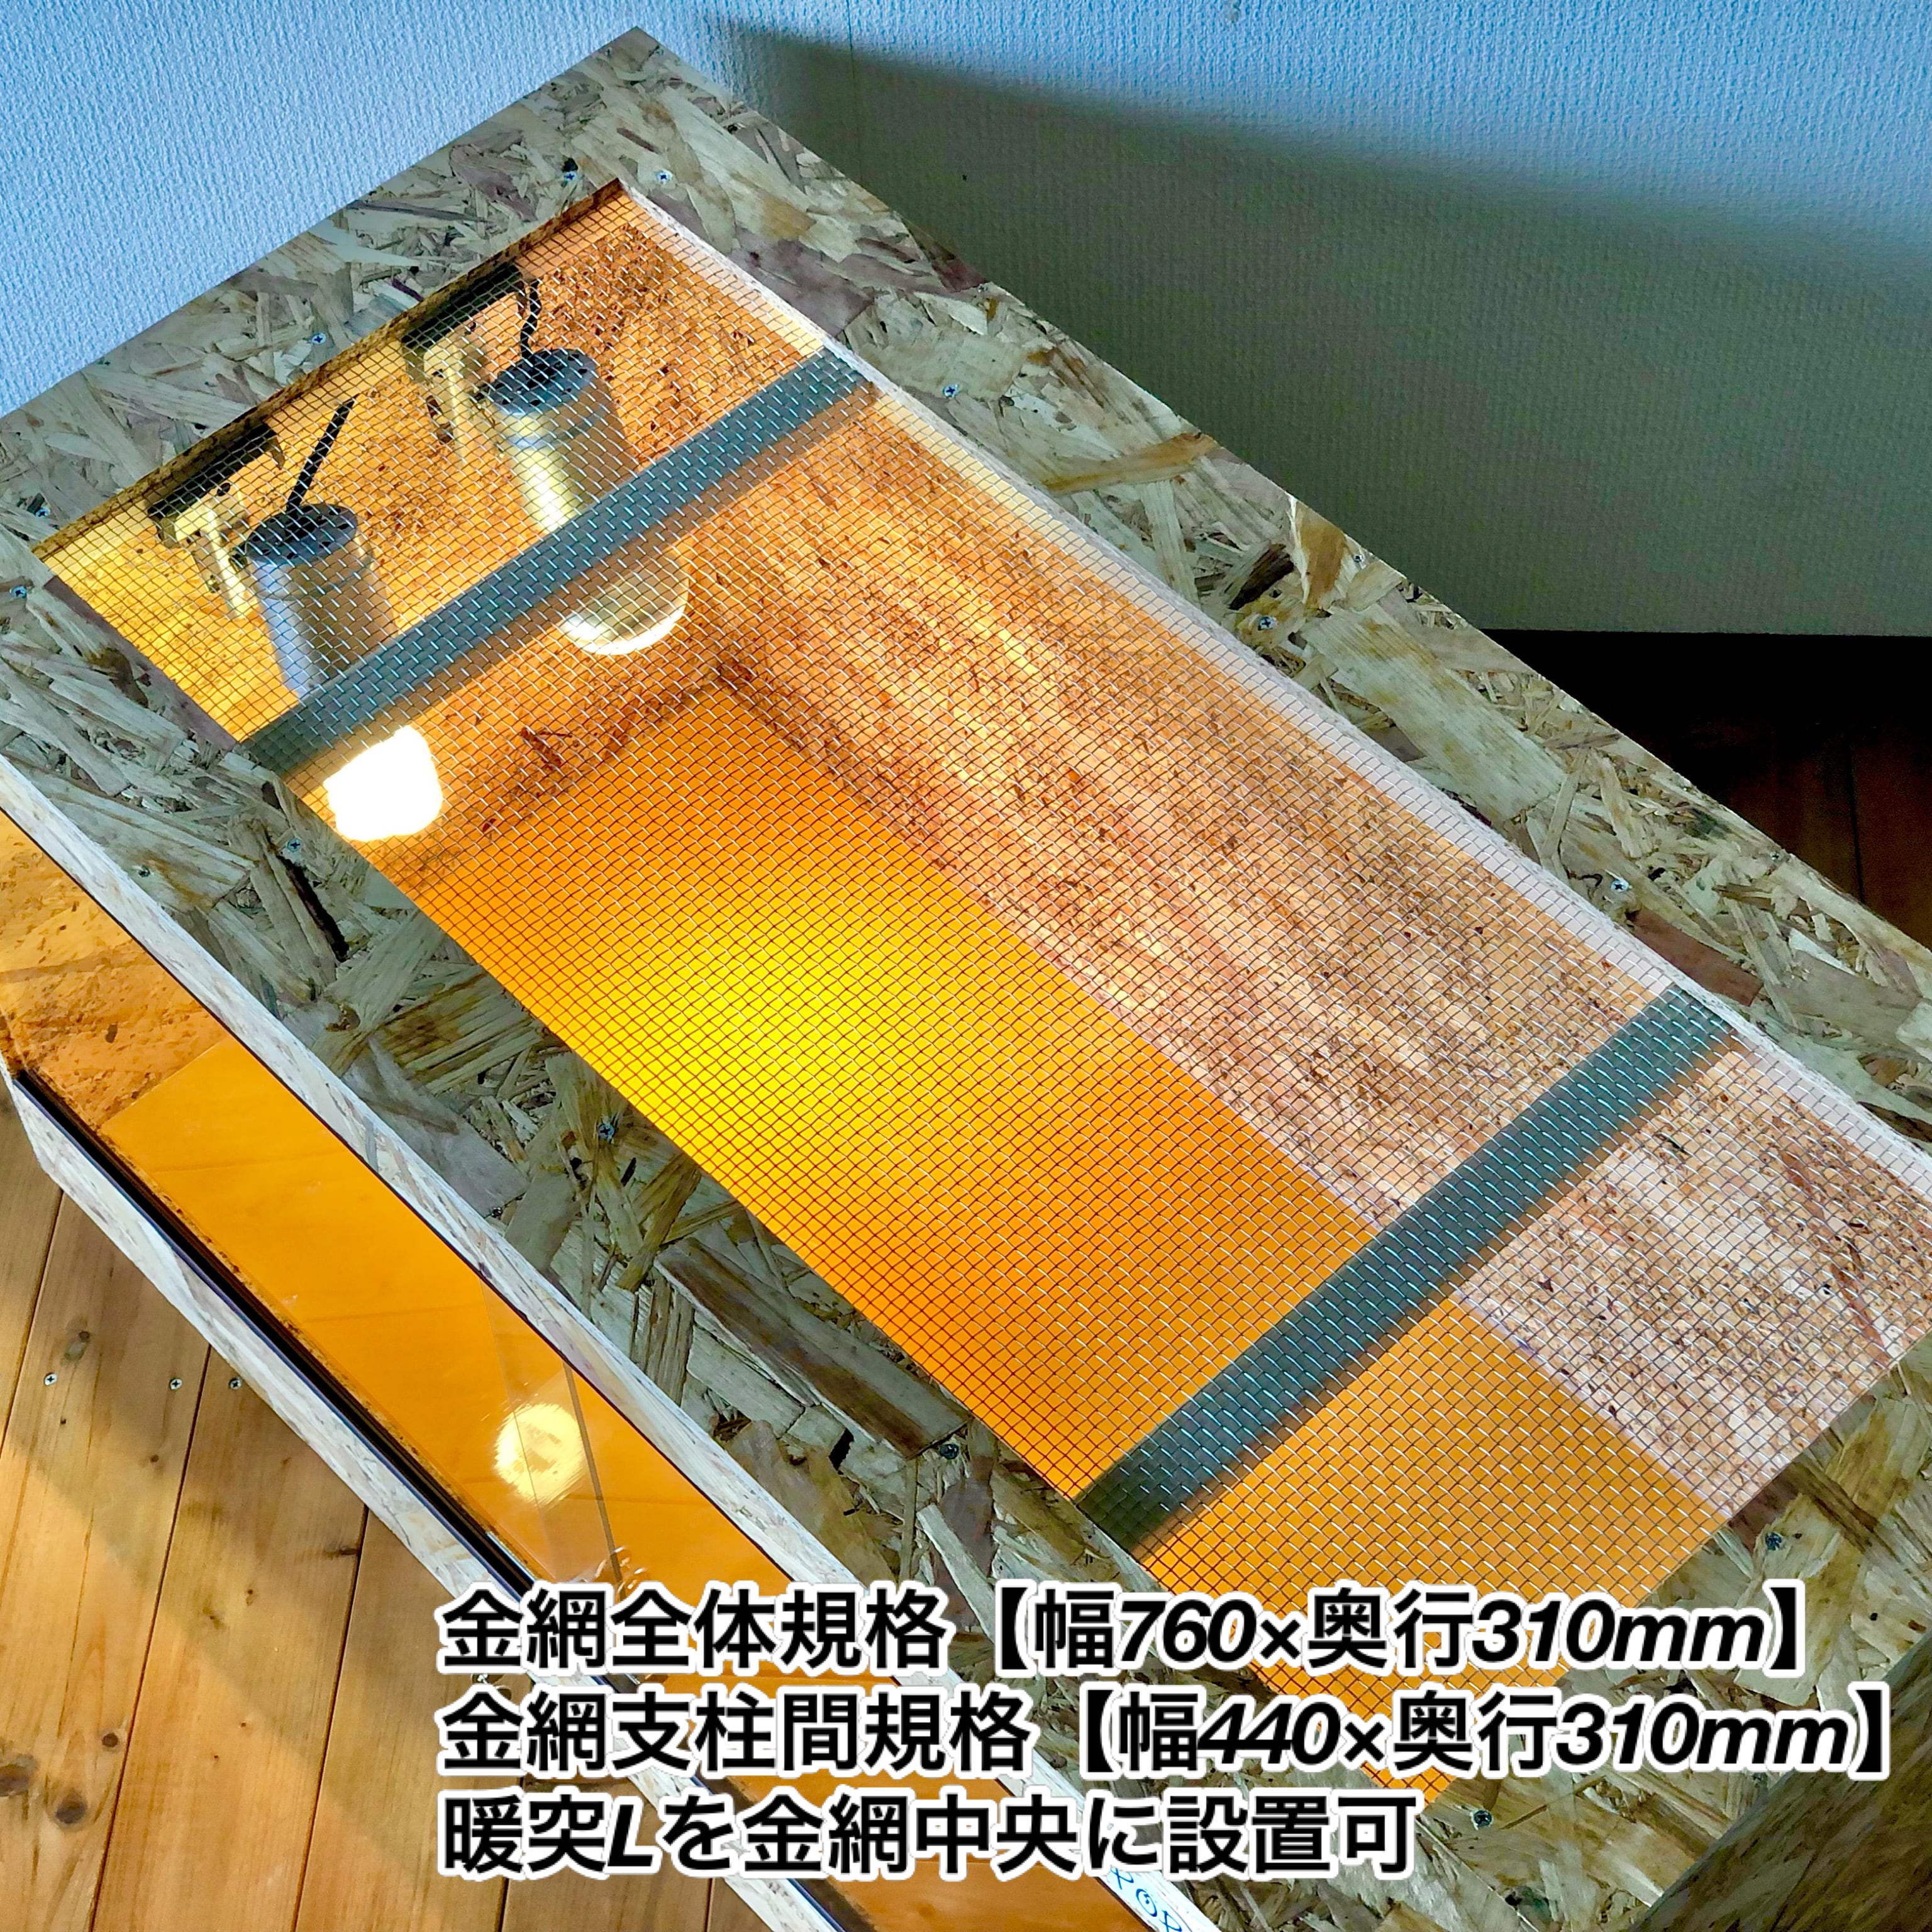 木製ケージ 900×450×450爬虫類 トカゲ カメ 底面防水 - 爬虫類/両生類用品